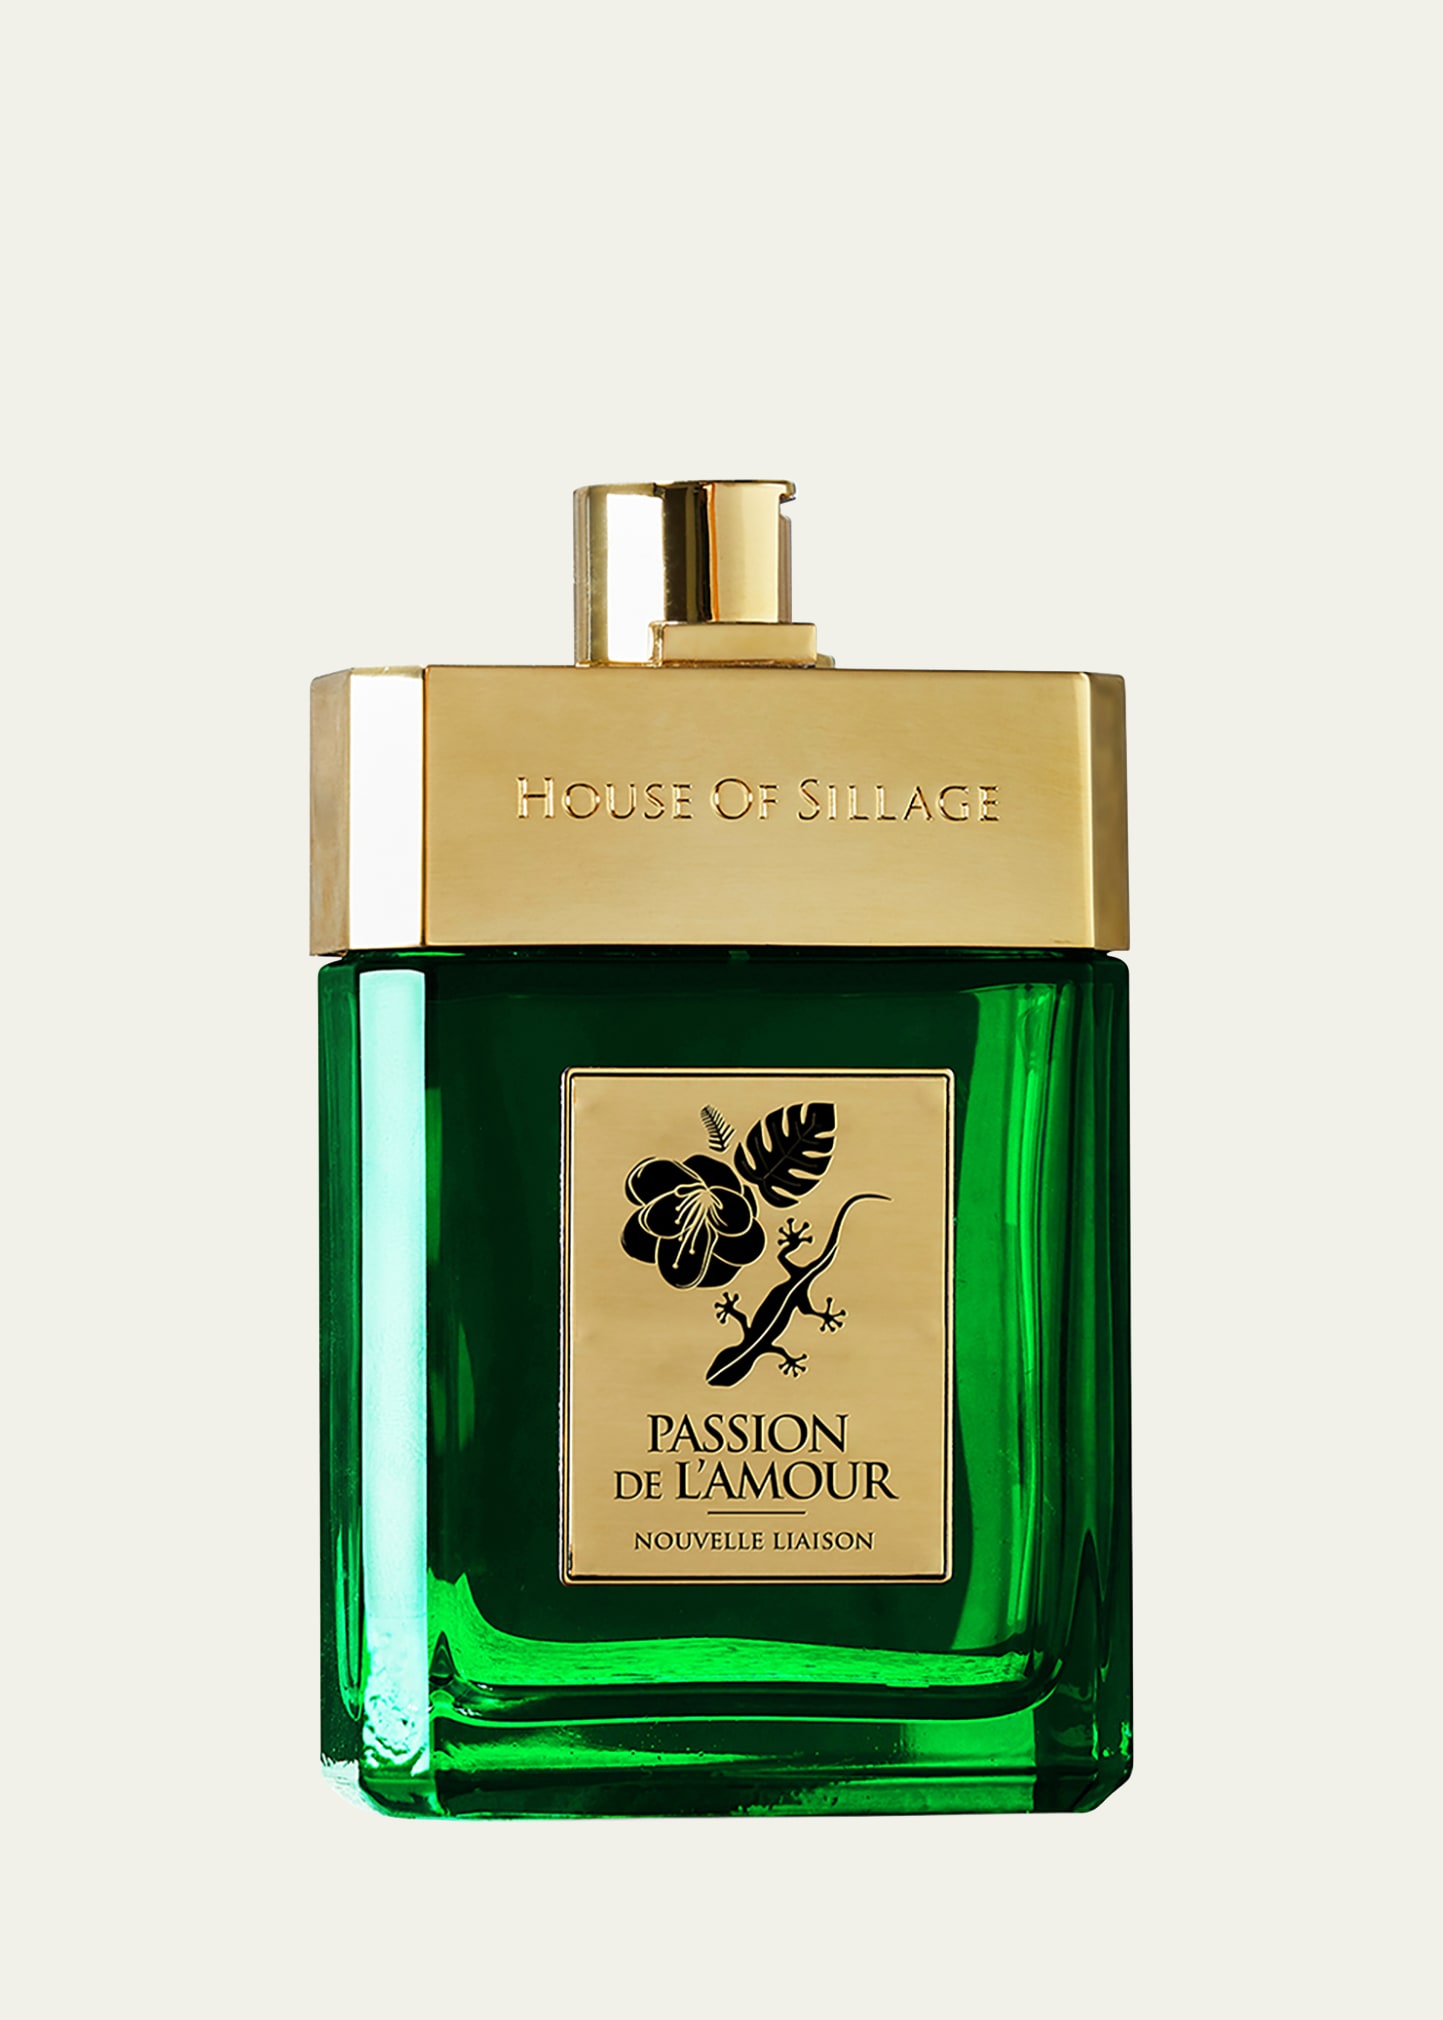 House of Sillage 2.5 oz. New Passion de L'amour Nouvelle Liaison Parfum